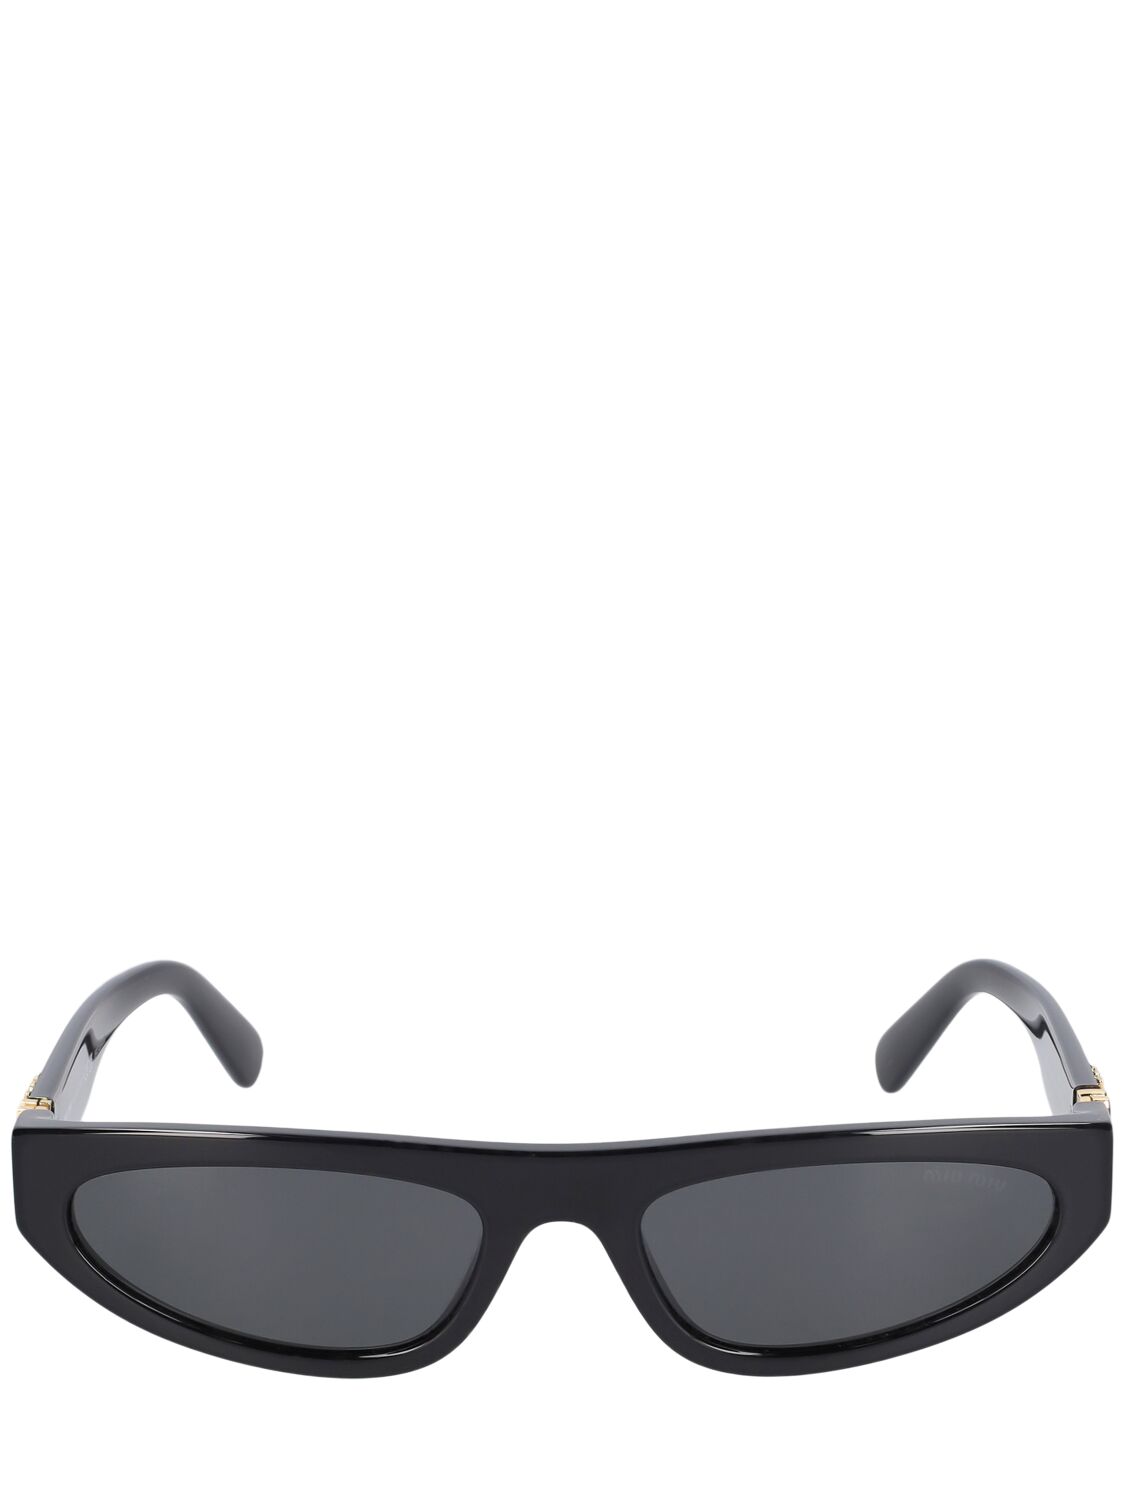 Image of Cat-eye Mask Acetate Sunglasses